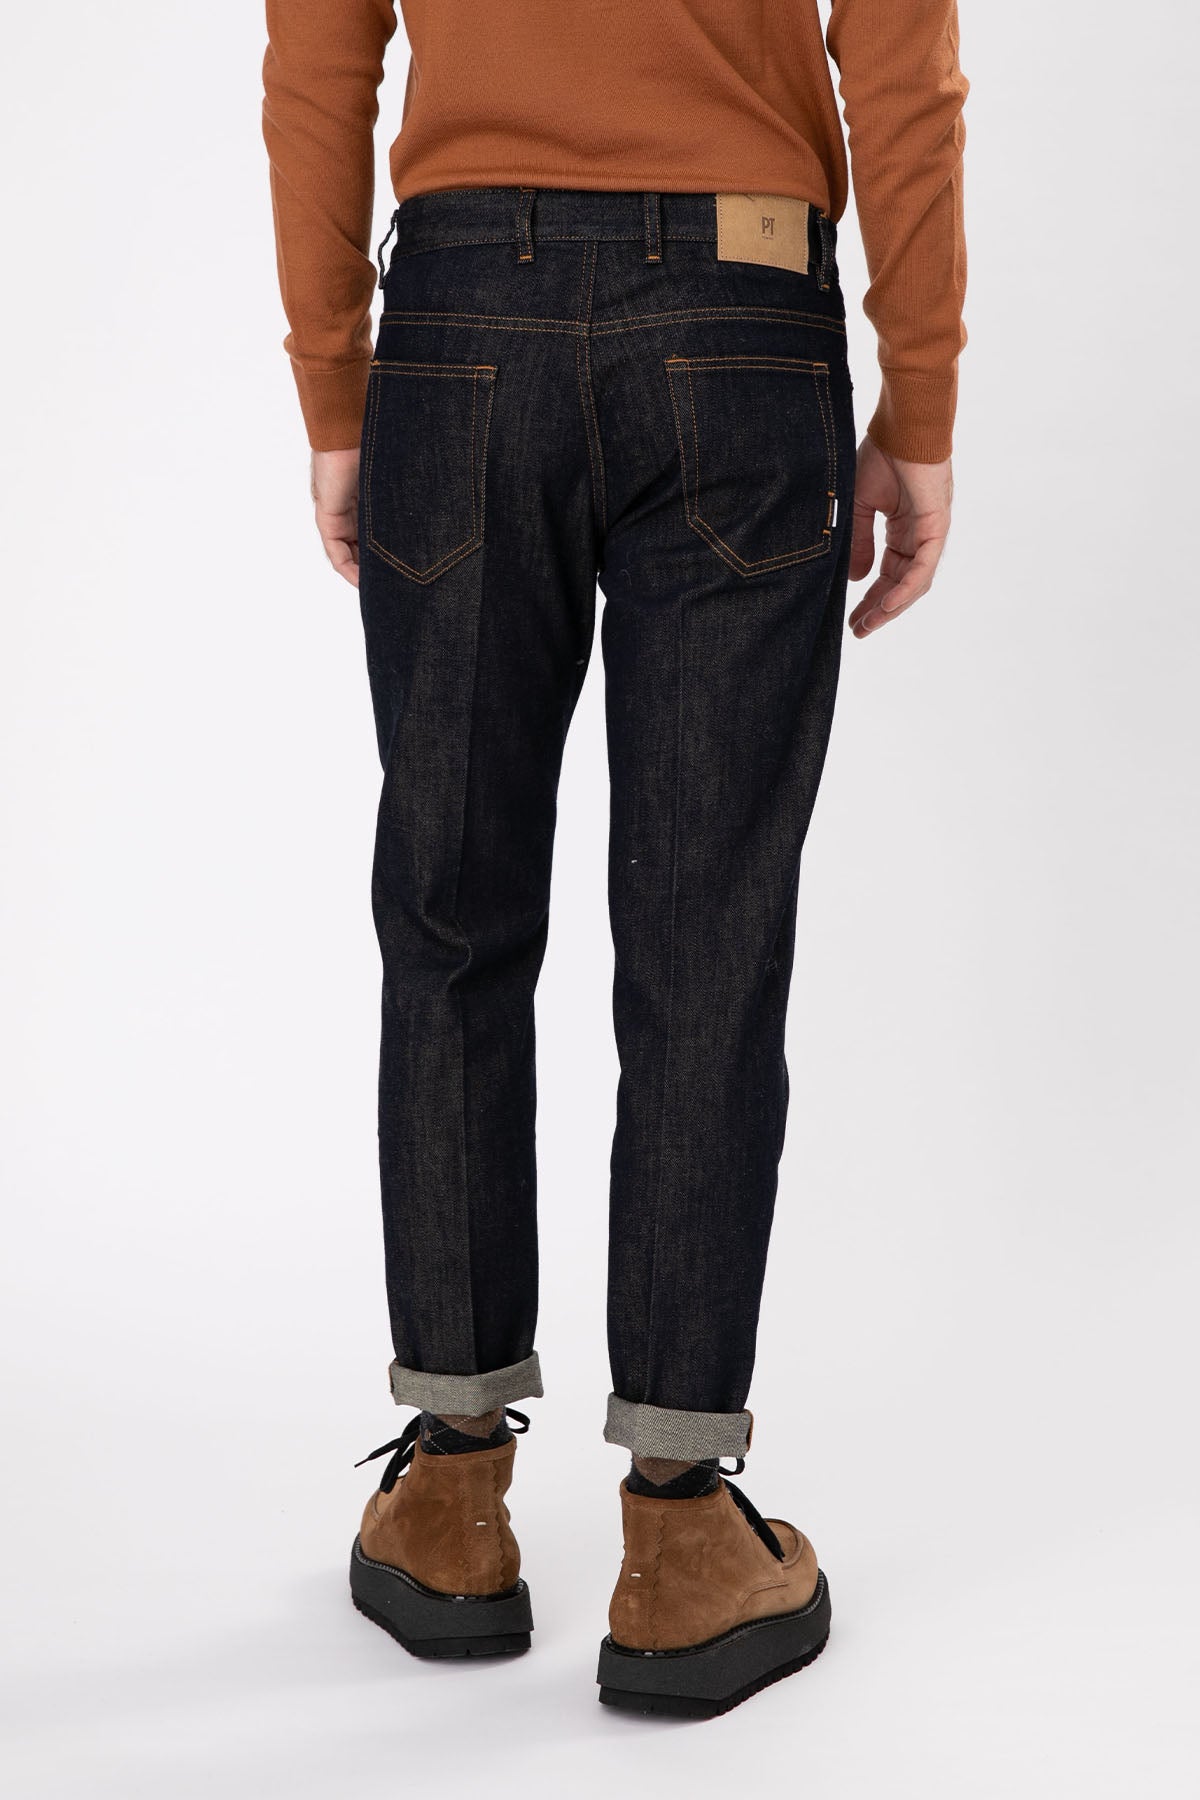 Pantaloni Torino Reggae Fit Duble Paça Jeans-Libas Trendy Fashion Store